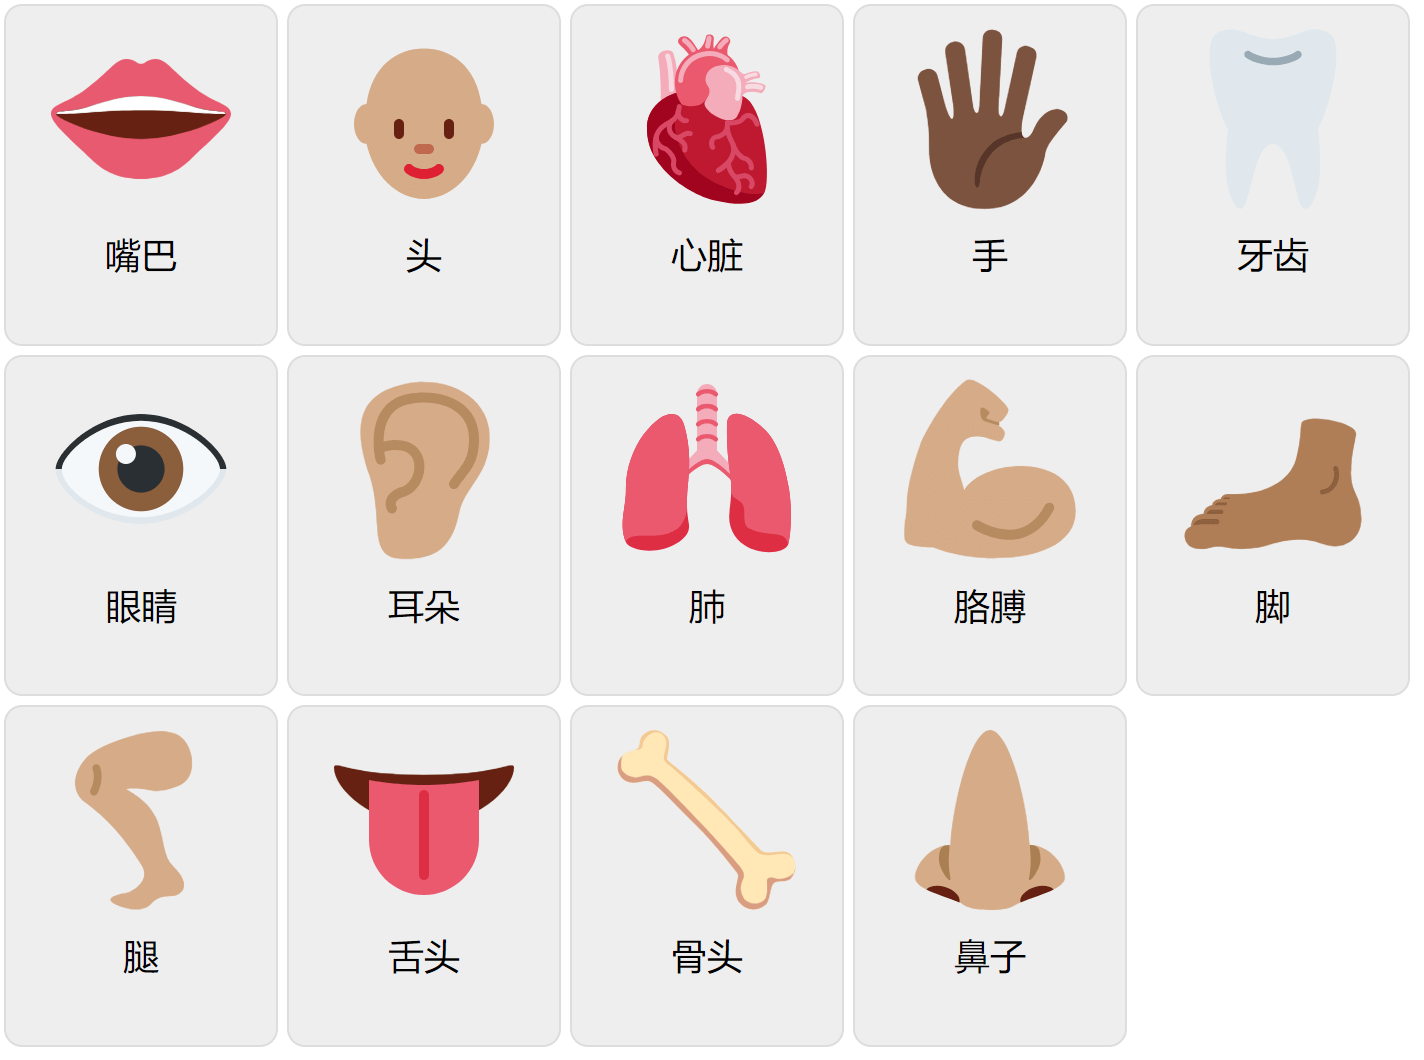 Körperteile auf Mandarin (Chinesisch)